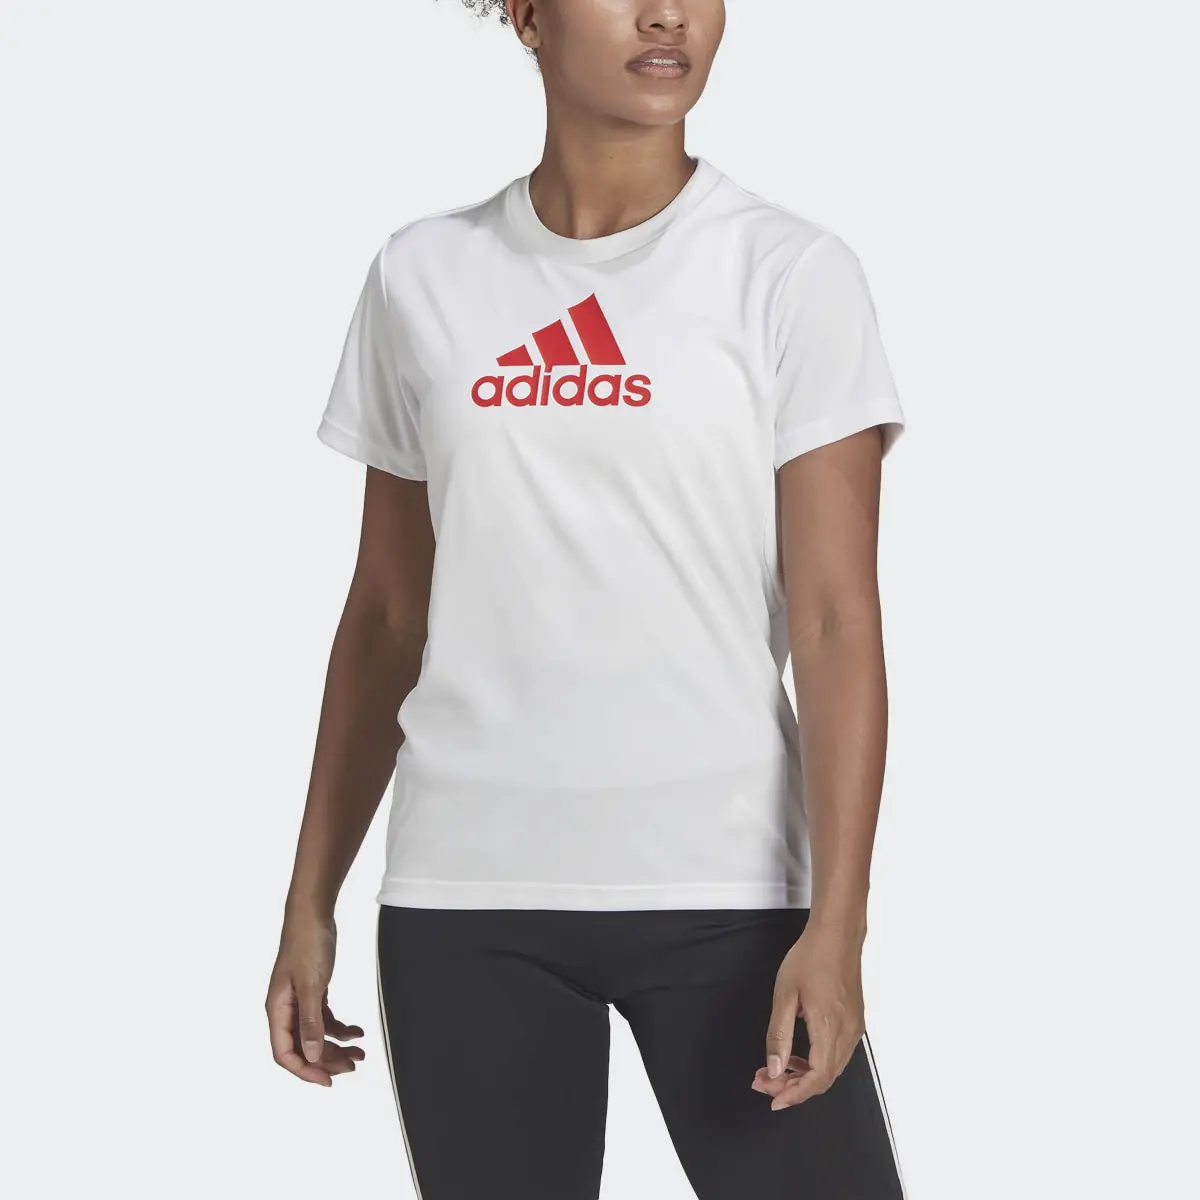 Adidas Primeblue Designed 2 Move Logo Sport T-Shirt. 1